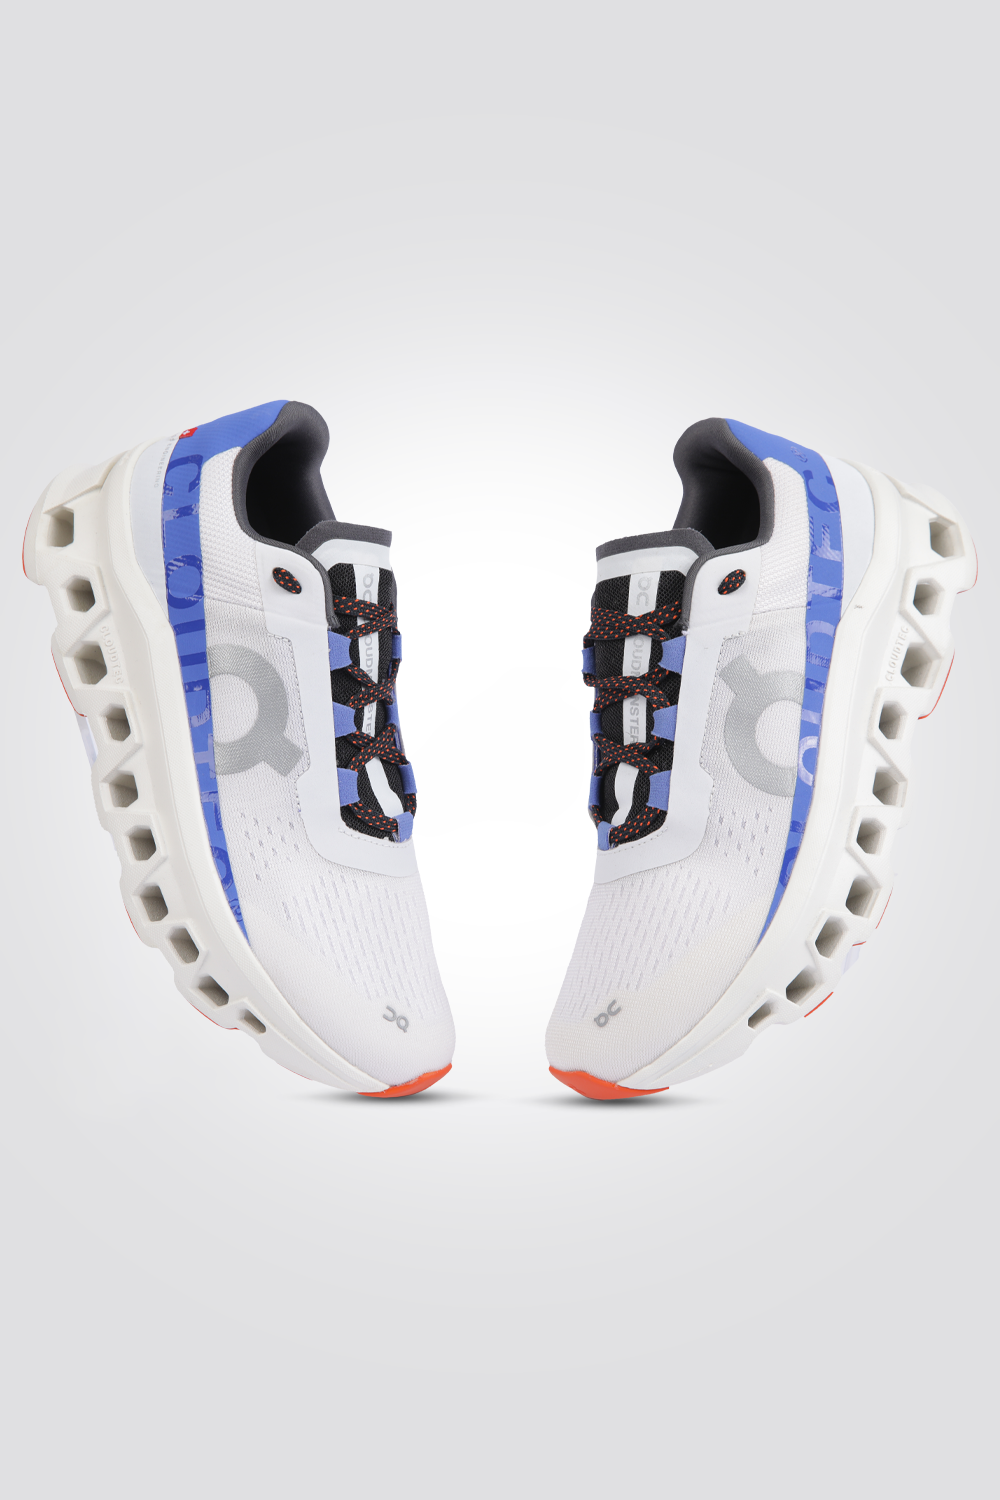 נעלי ספורט לגברים Cloudmonster Frost בצבע לבן וכחול